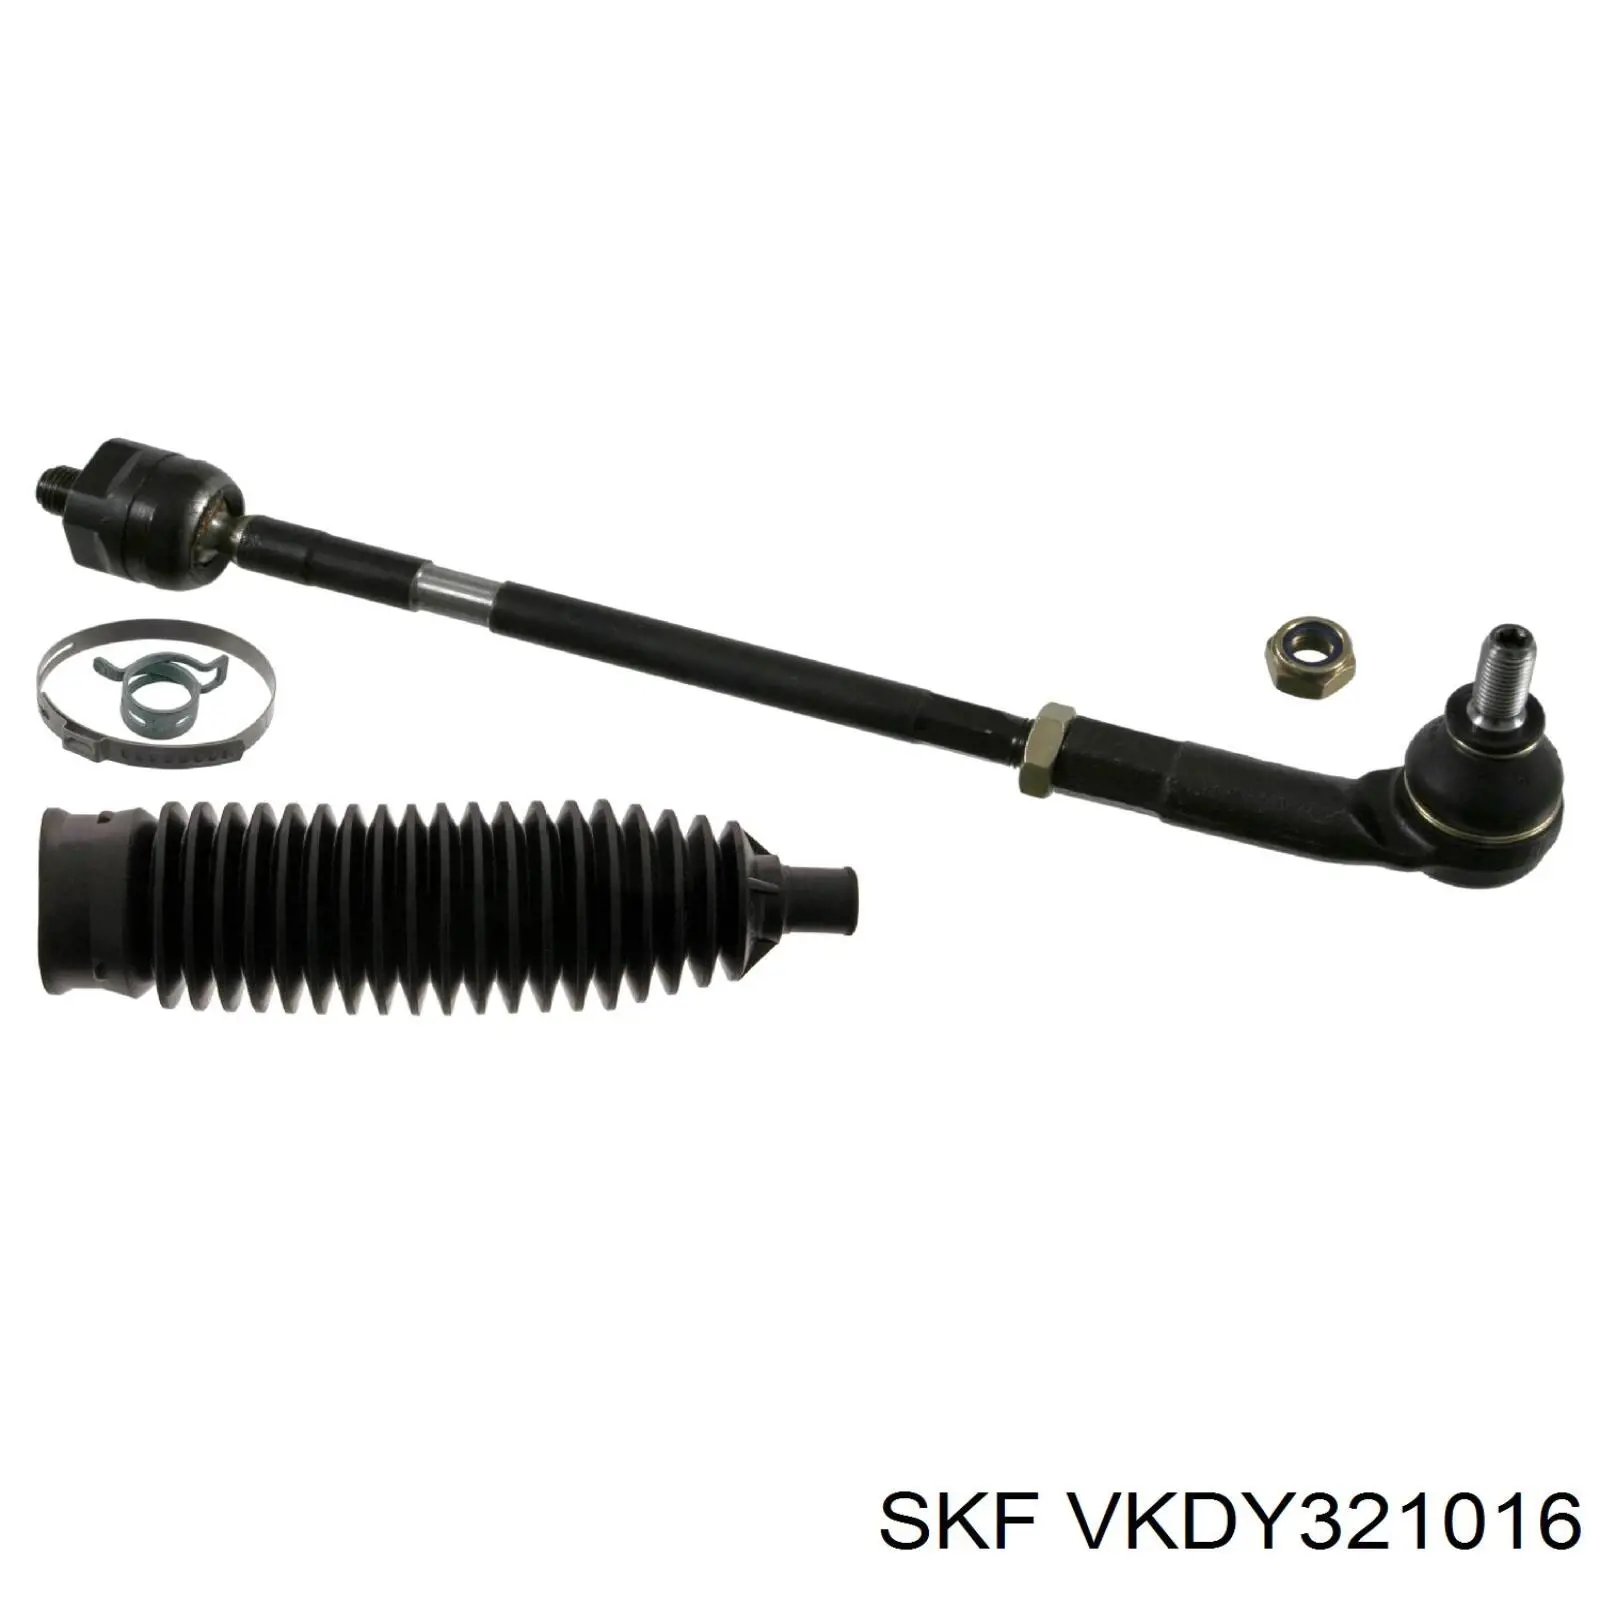 VKDY 321016 SKF barra de acoplamiento